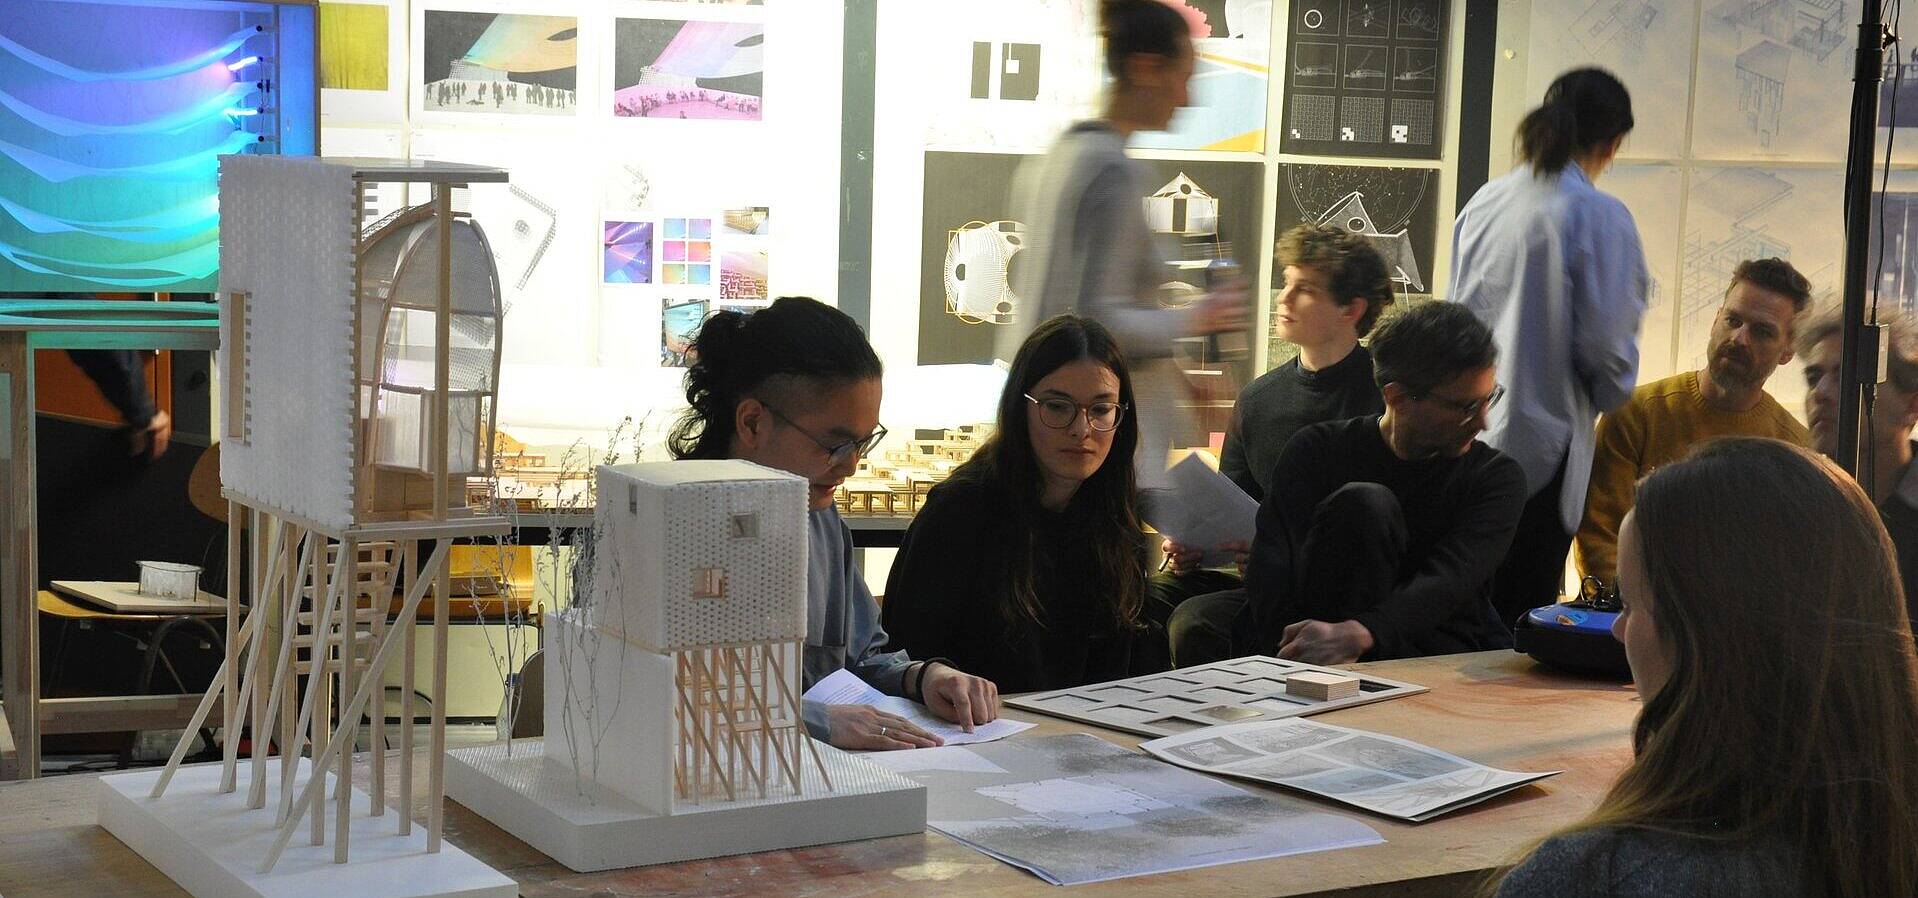 Neun junge Personen in einem Raum voller architektonischer Objekte und Installationen, 3 Personen besprechen einen Plan, die anderen bewegen sich im Raum oder sitzen